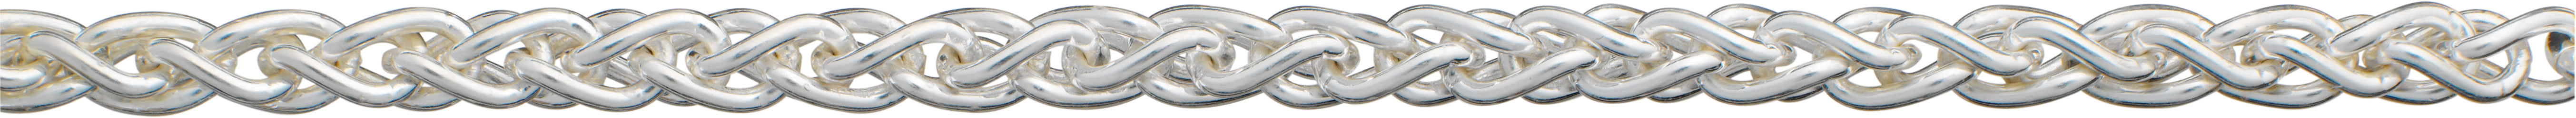 vlechtketting zilver 925/- Ø 4,20mm